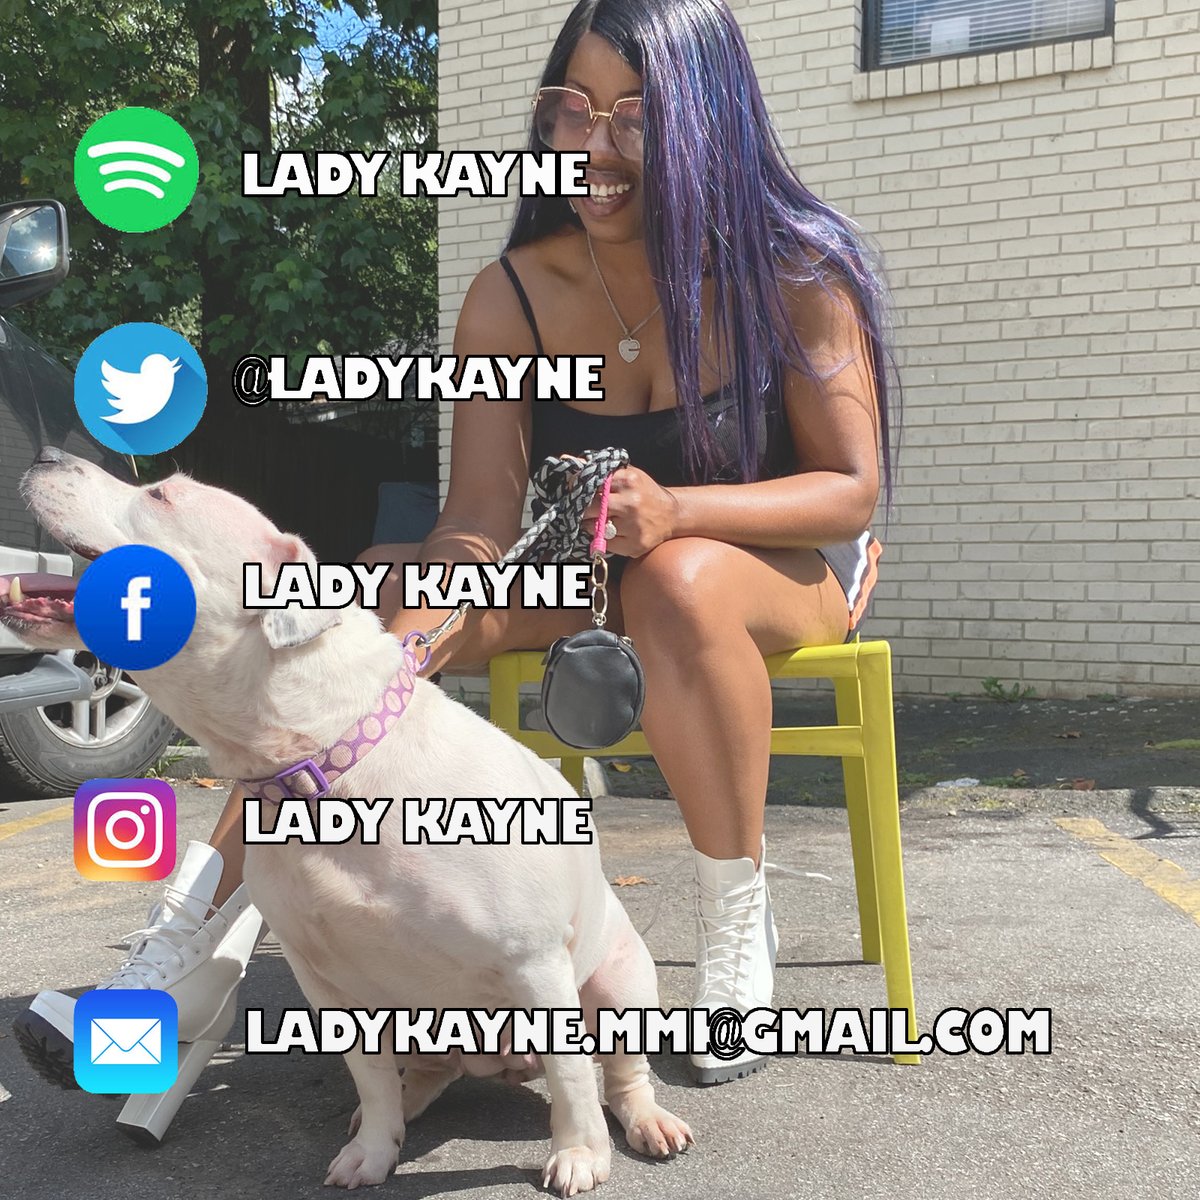 'It's the #GrindGang + we locking-in, I'm gettin 💸 w/ my patna 'dem...'

#recognize ft Lady Kayne 

🌺🌸💕
linktr.ee/ladykayne
•
#LadyKayne #HAVNIT #StudioLove #ILike #LookSweet #indieartist #femalerapper #spotify #lotp